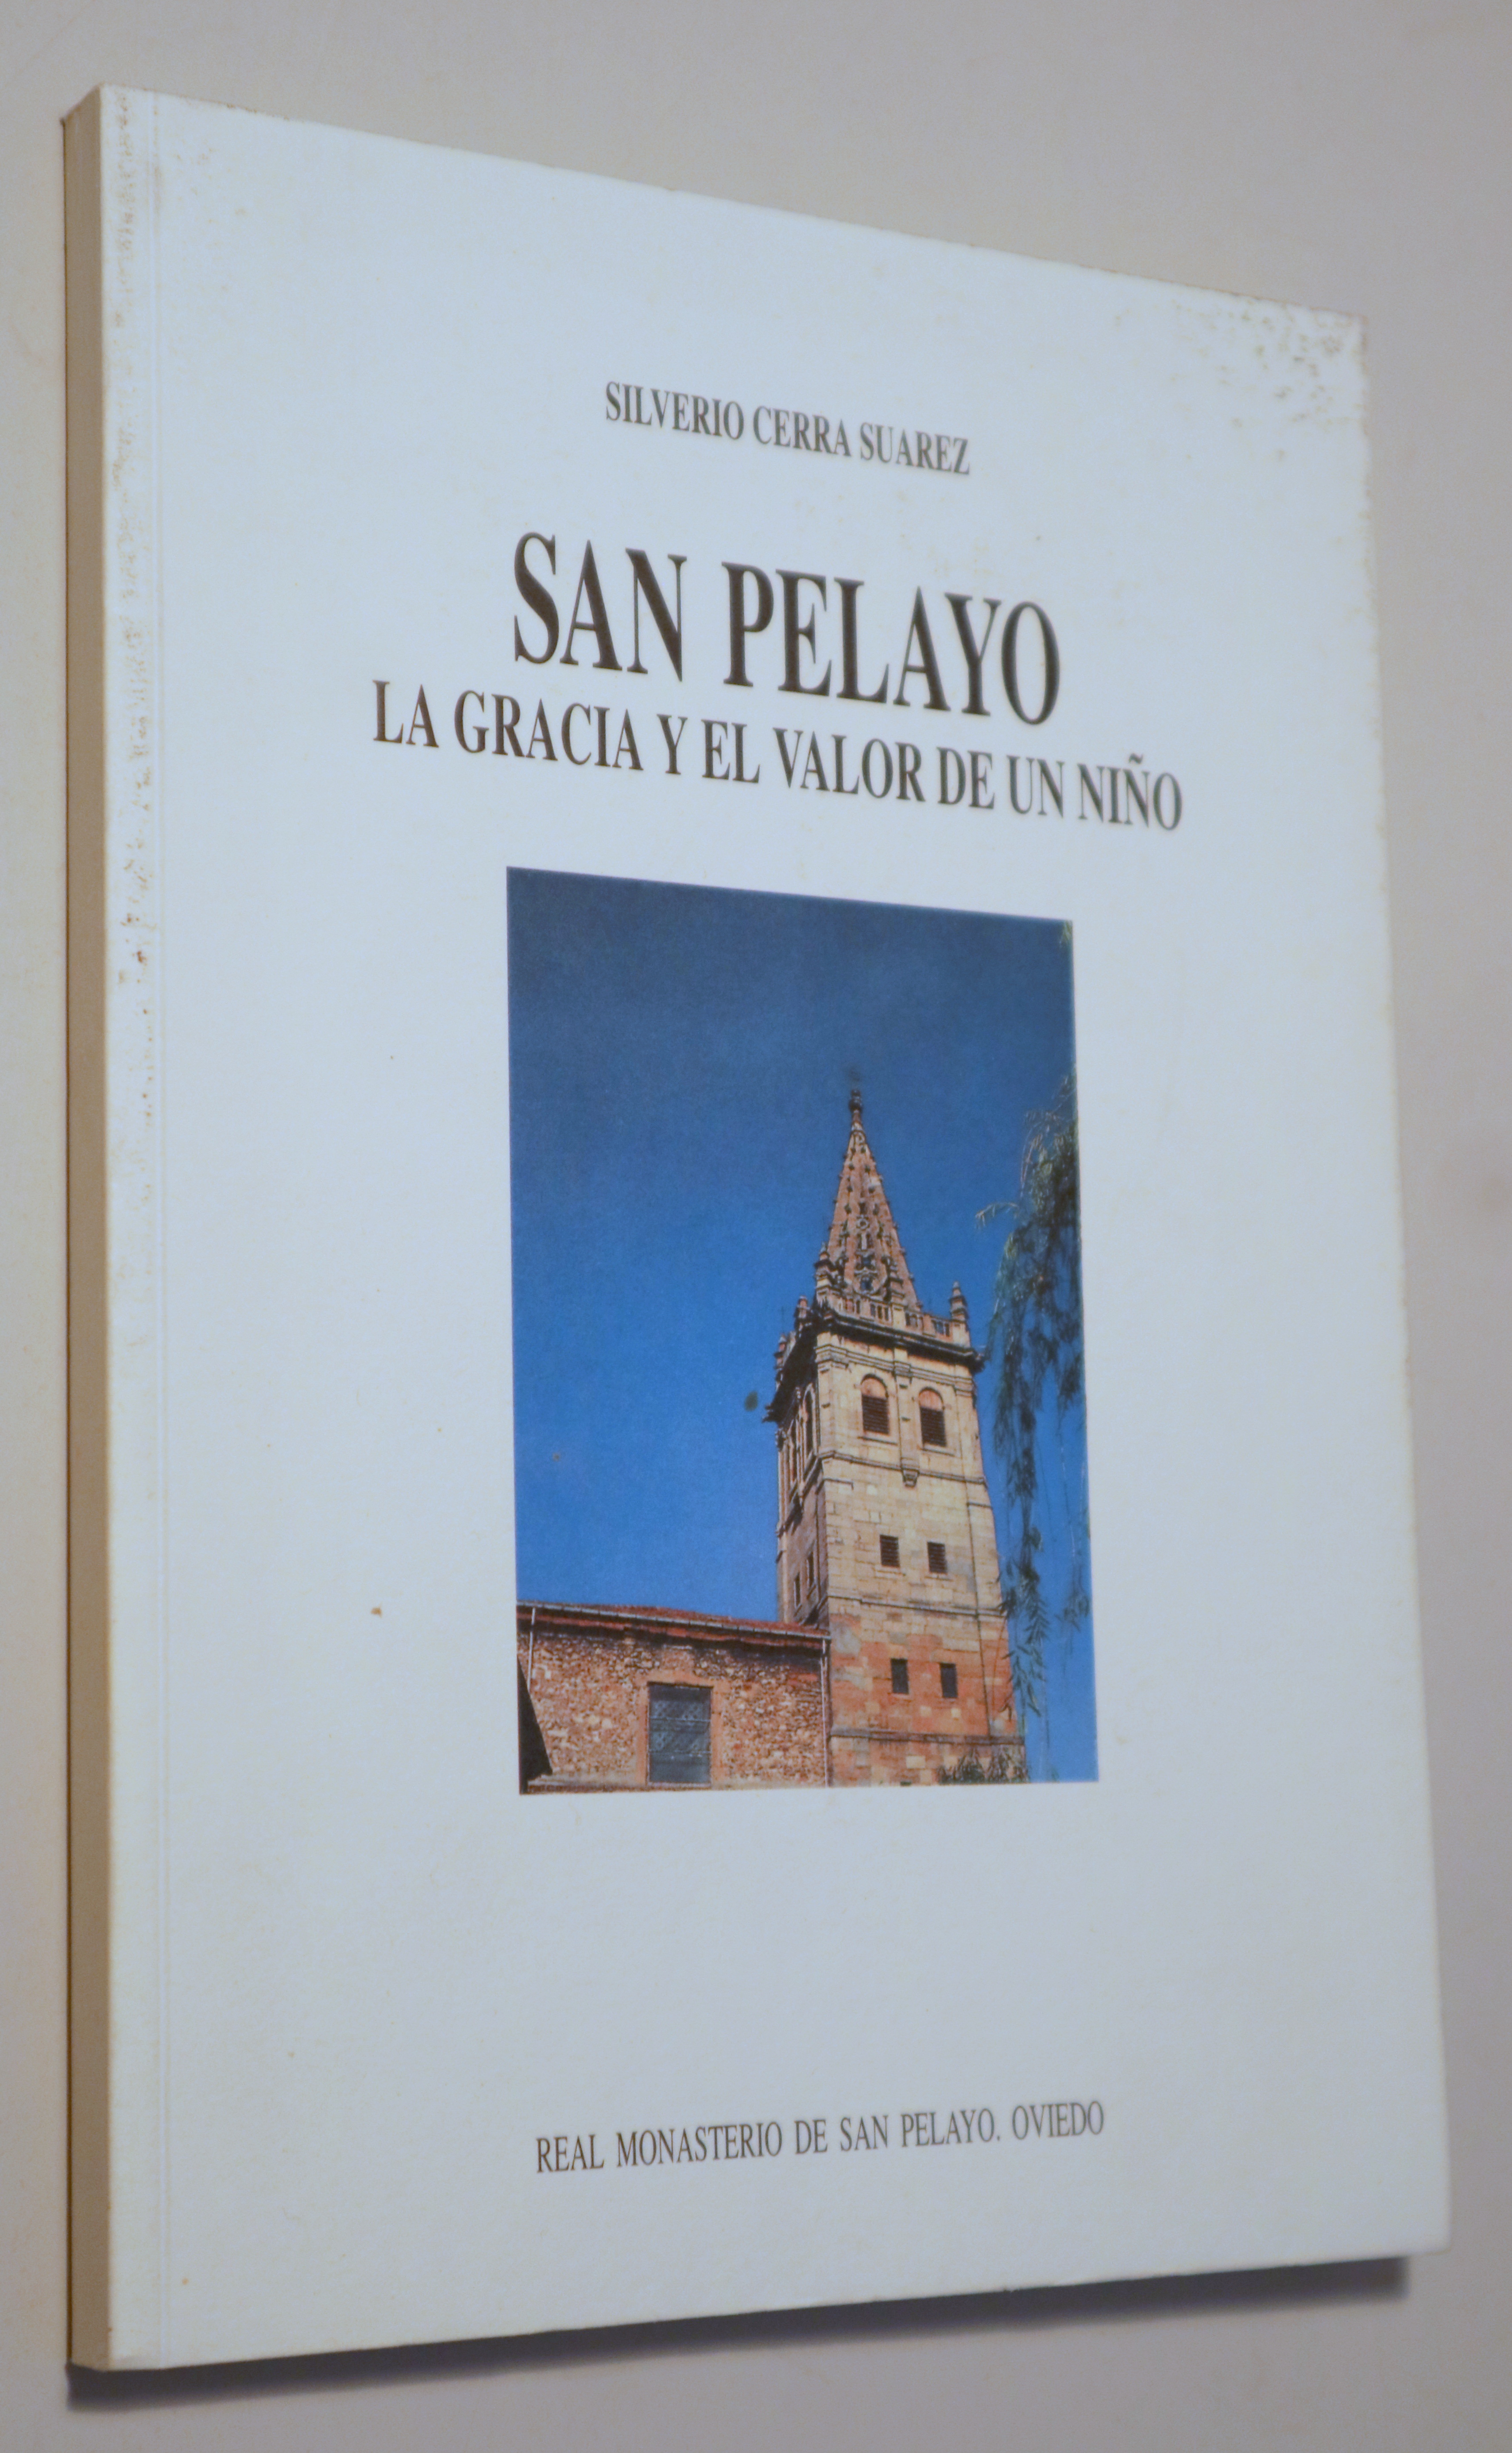 SAN PELAYO. La gracia y el valor de un niño - Oviedo 1994 - Iustrado